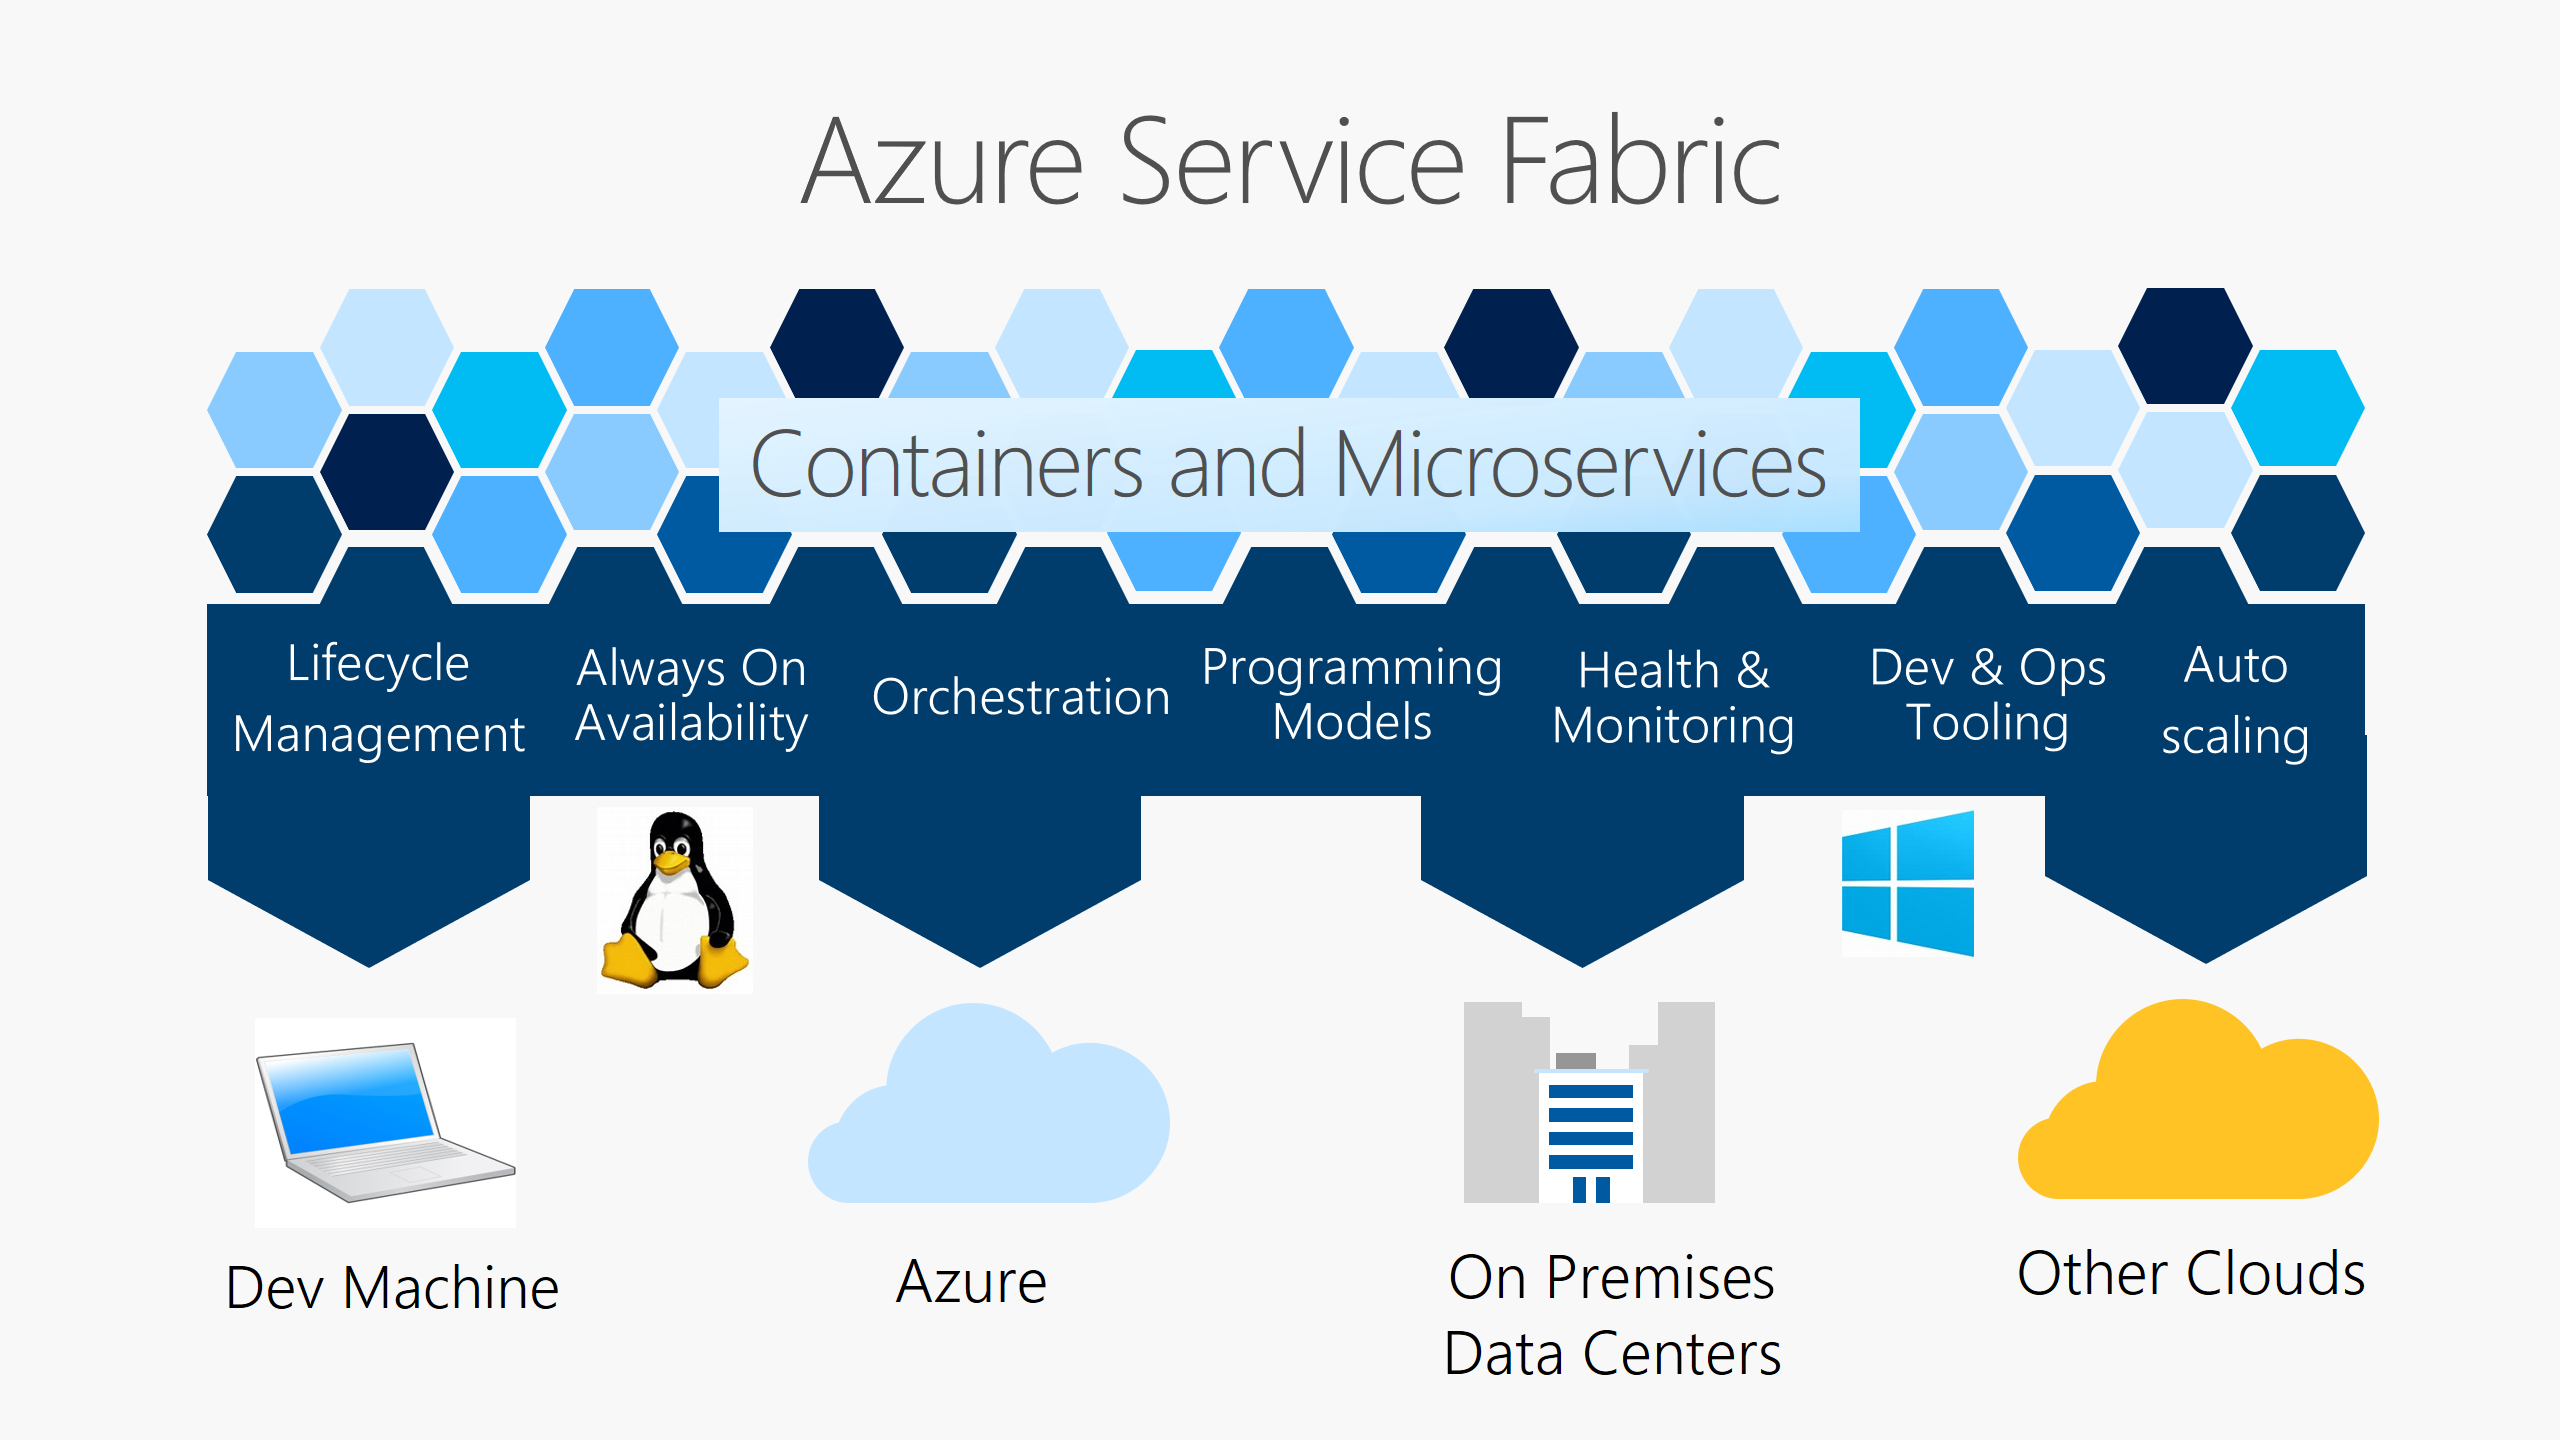 Service Fabric 平台提供了生命周期管理、可用性、业务流程、编程模型、运行状况和监视、开发和操作工具，以及在 Azure、本地、其他云和你的开发计算机上进行自动缩放的功能